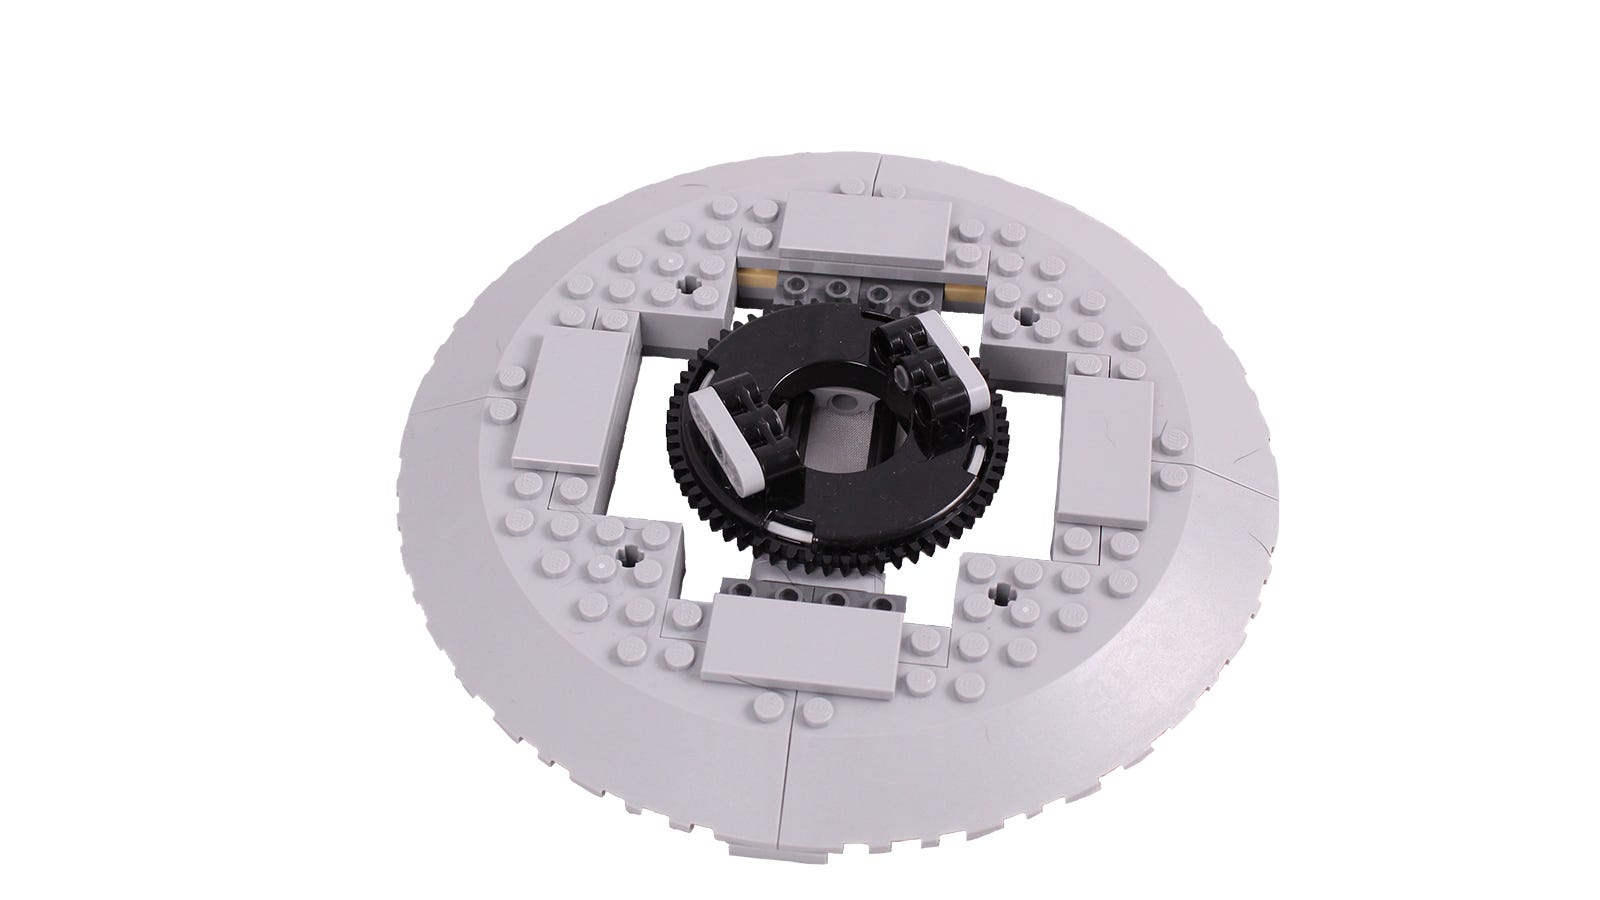 Tampilan jarak dekat dari mekanisme meja putar LEGO.